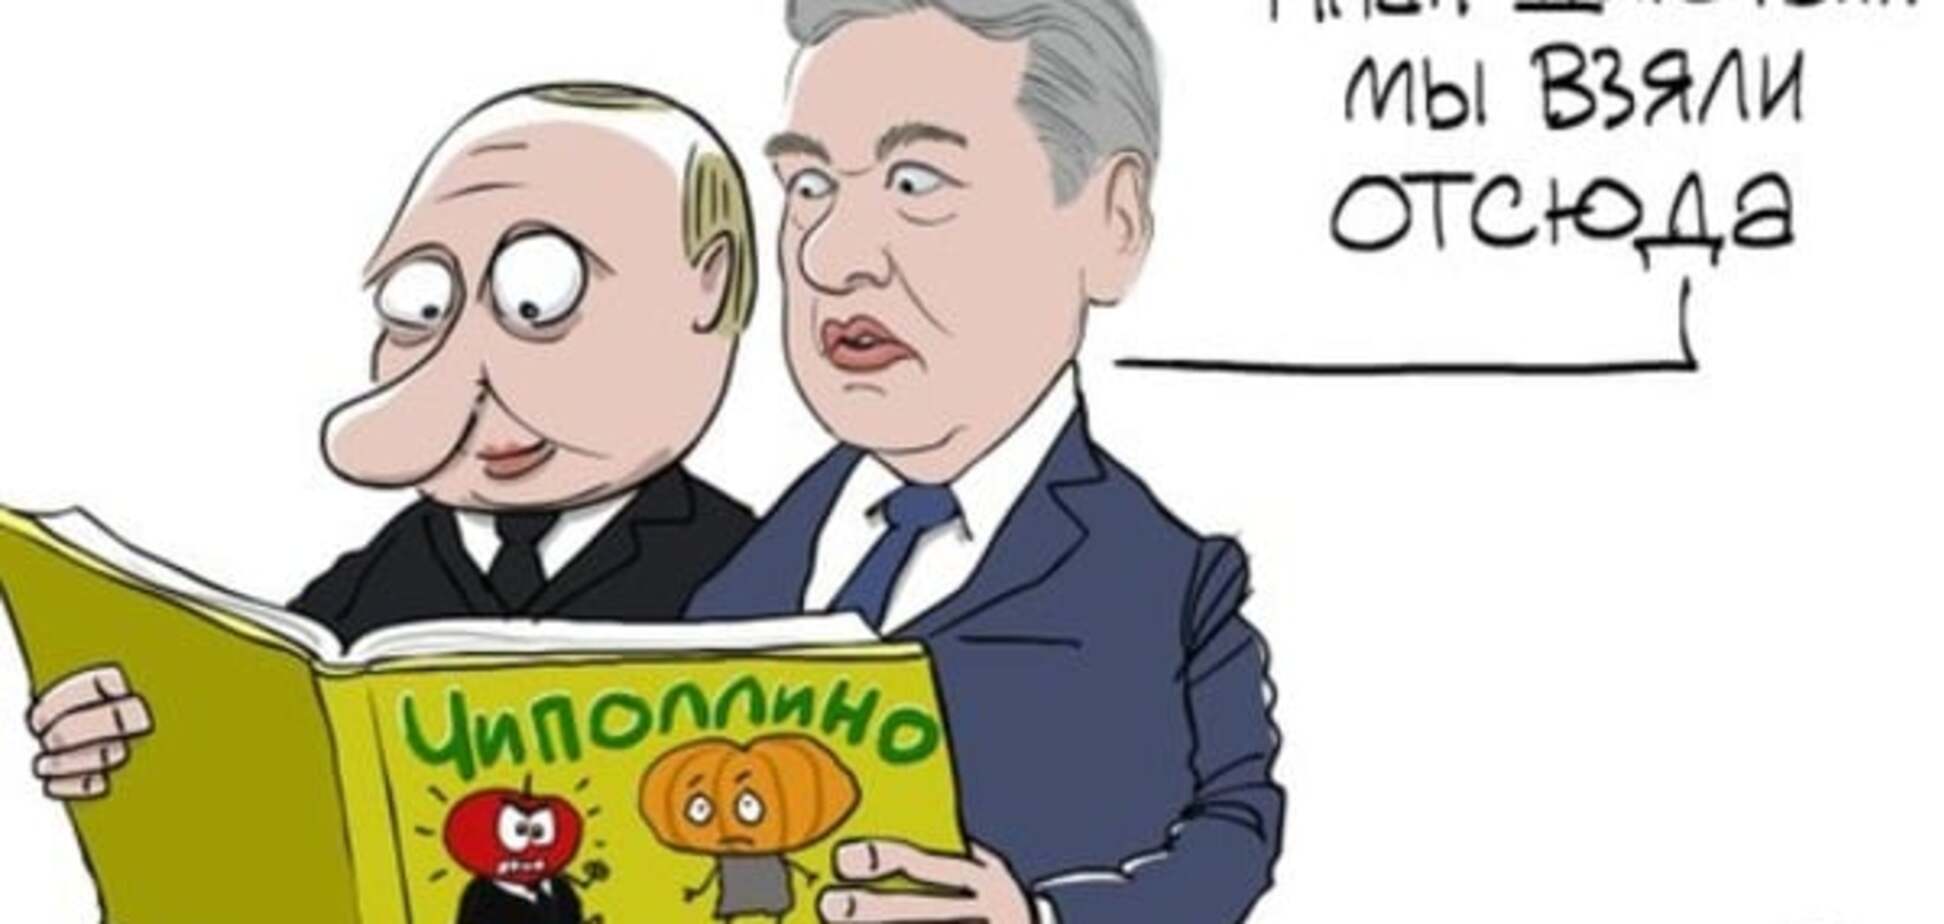 Новий шедевр Йолкіна: Собянін і Путін діють згідно з 'Чіполіно'. Фотофакт